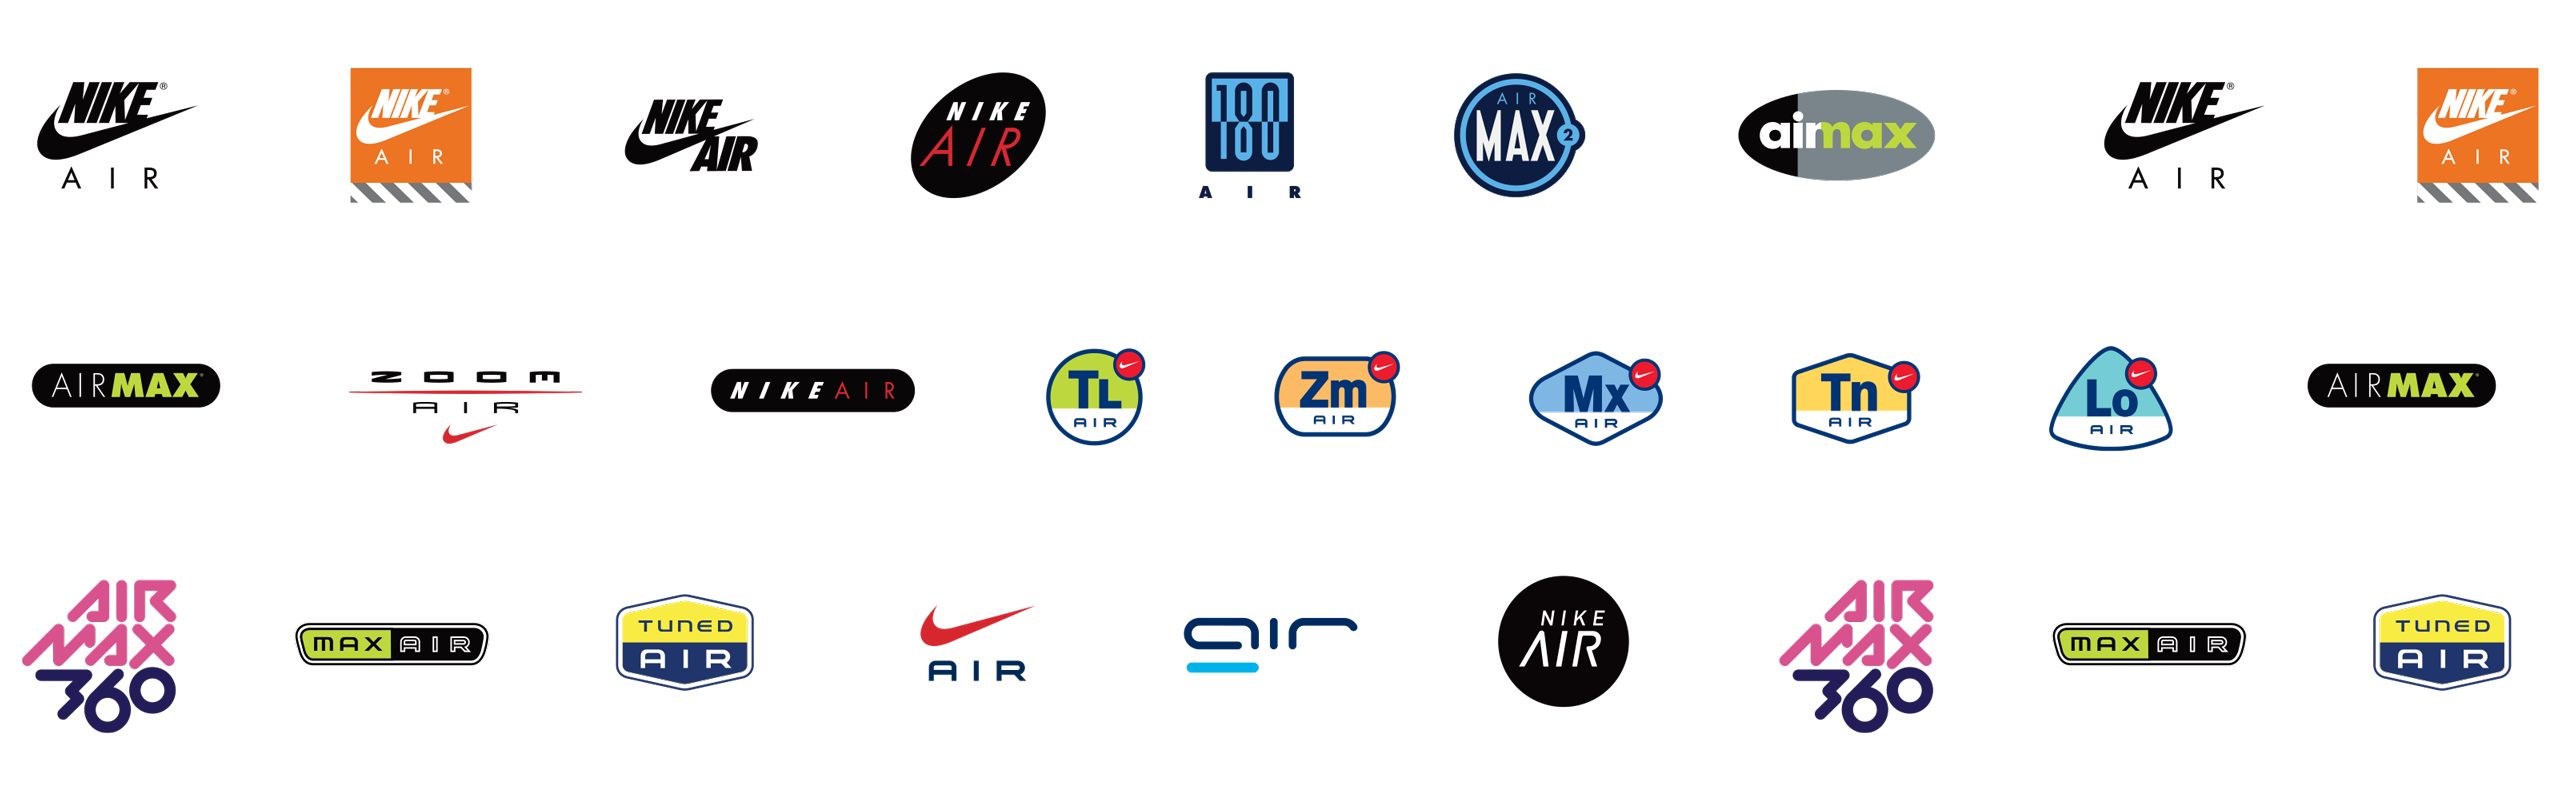 Nike Air Rebrand - Metcalf